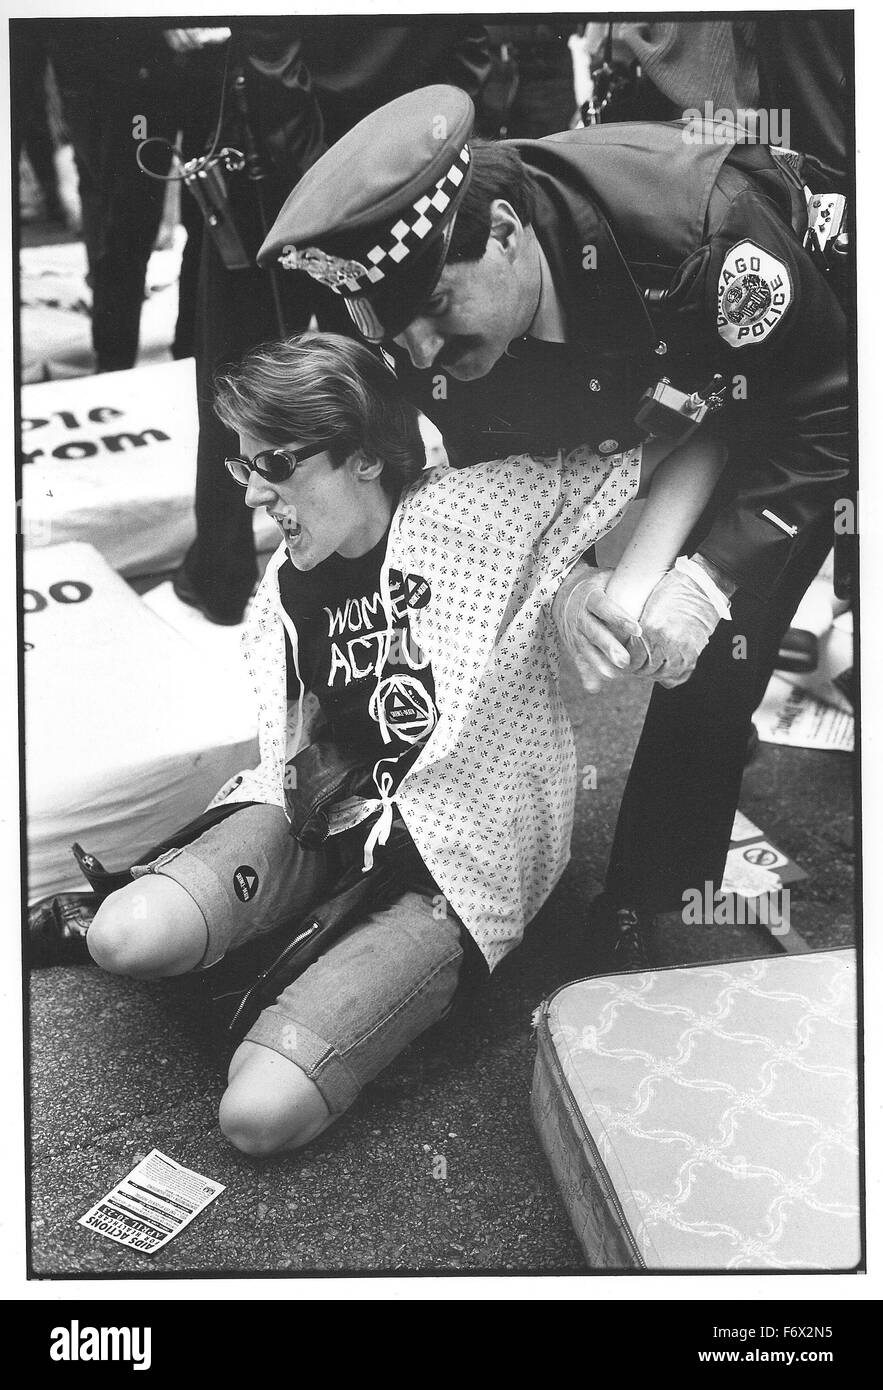 Chicago Polizei verhaftet einen weiblichen Demonstrant in der Gruppe ACT UP (AIDS Coalition to Unleash Power) im April 1990. Die Gruppe wurde an mehreren Standorten rund um die Stadt, mangelnde Mittel für AIDS-Behandlung protestiert. In diesem Teil des Protestes erstellt Frauen ein "AIDS Ward" auf der Straße, mit Matratzen und setzte sich Verkehr blockiert, bis sie festgenommen wurden. Die jeweilige Aktion gezielt das Problem, dass zum Zeitpunkt der Cook County Hospital nicht, Patientinnen in der AIDS-Gemeinde akzeptieren würde, trotz des Habens leerer Betten zur Verfügung. Stockfoto